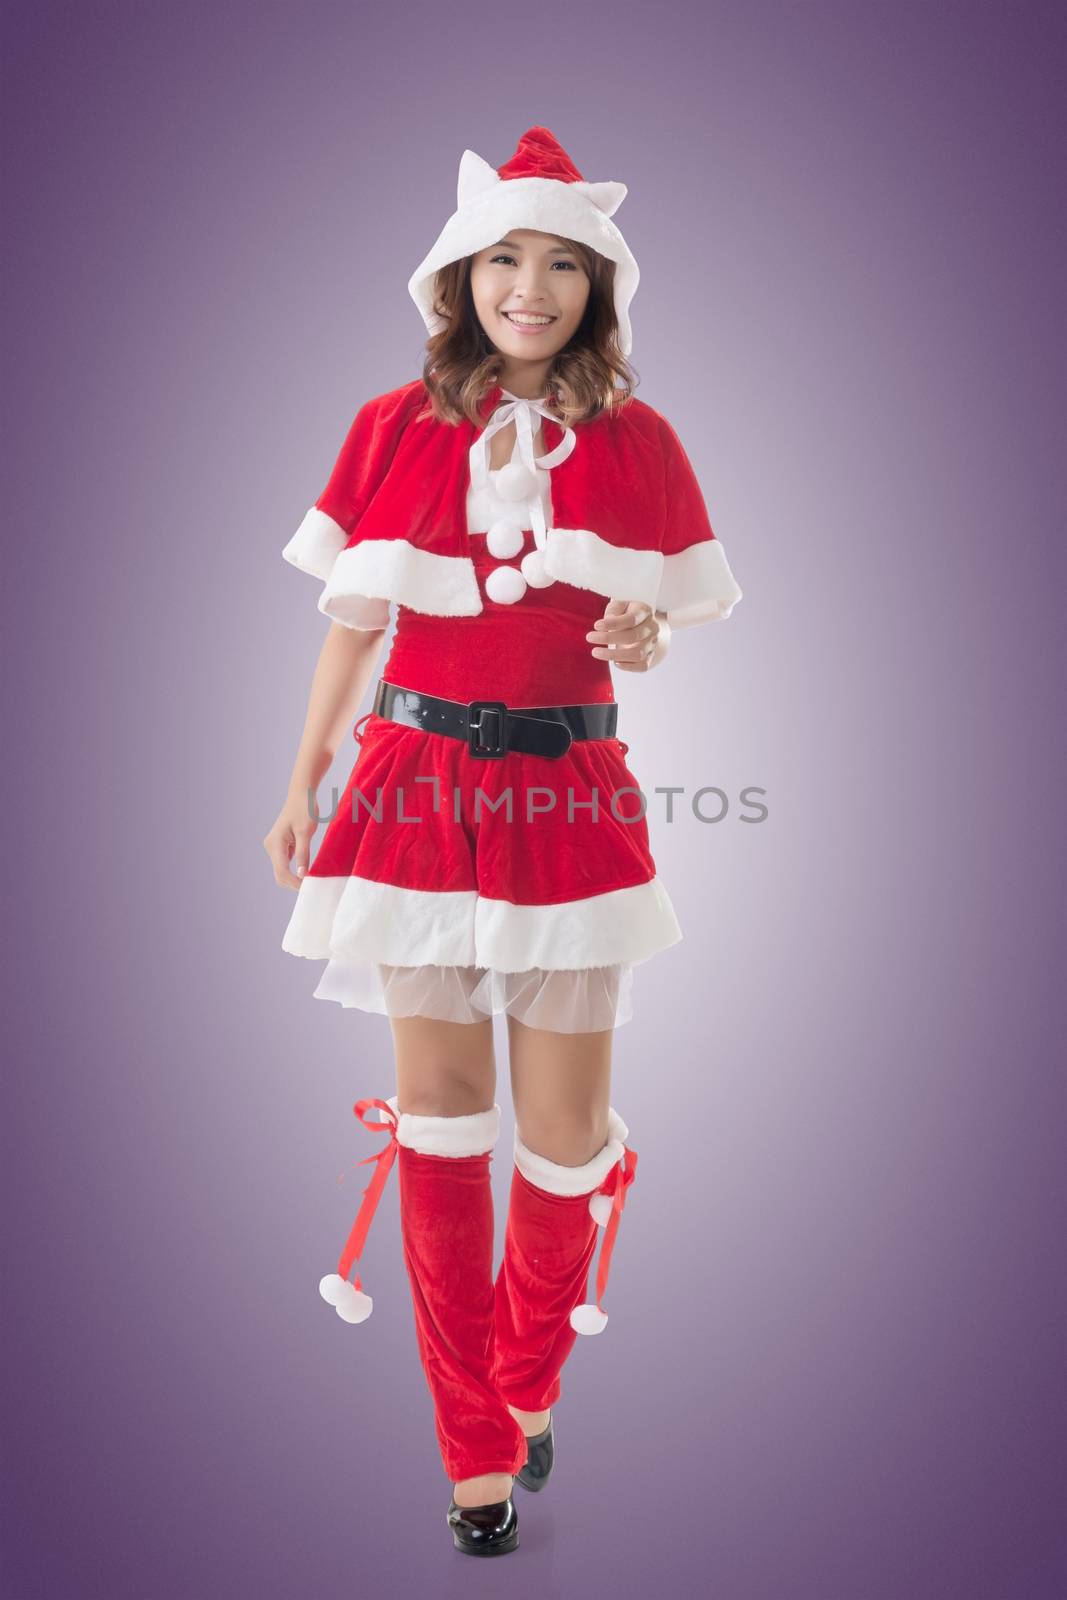 Asian Christmas girl walk, full length portrait.